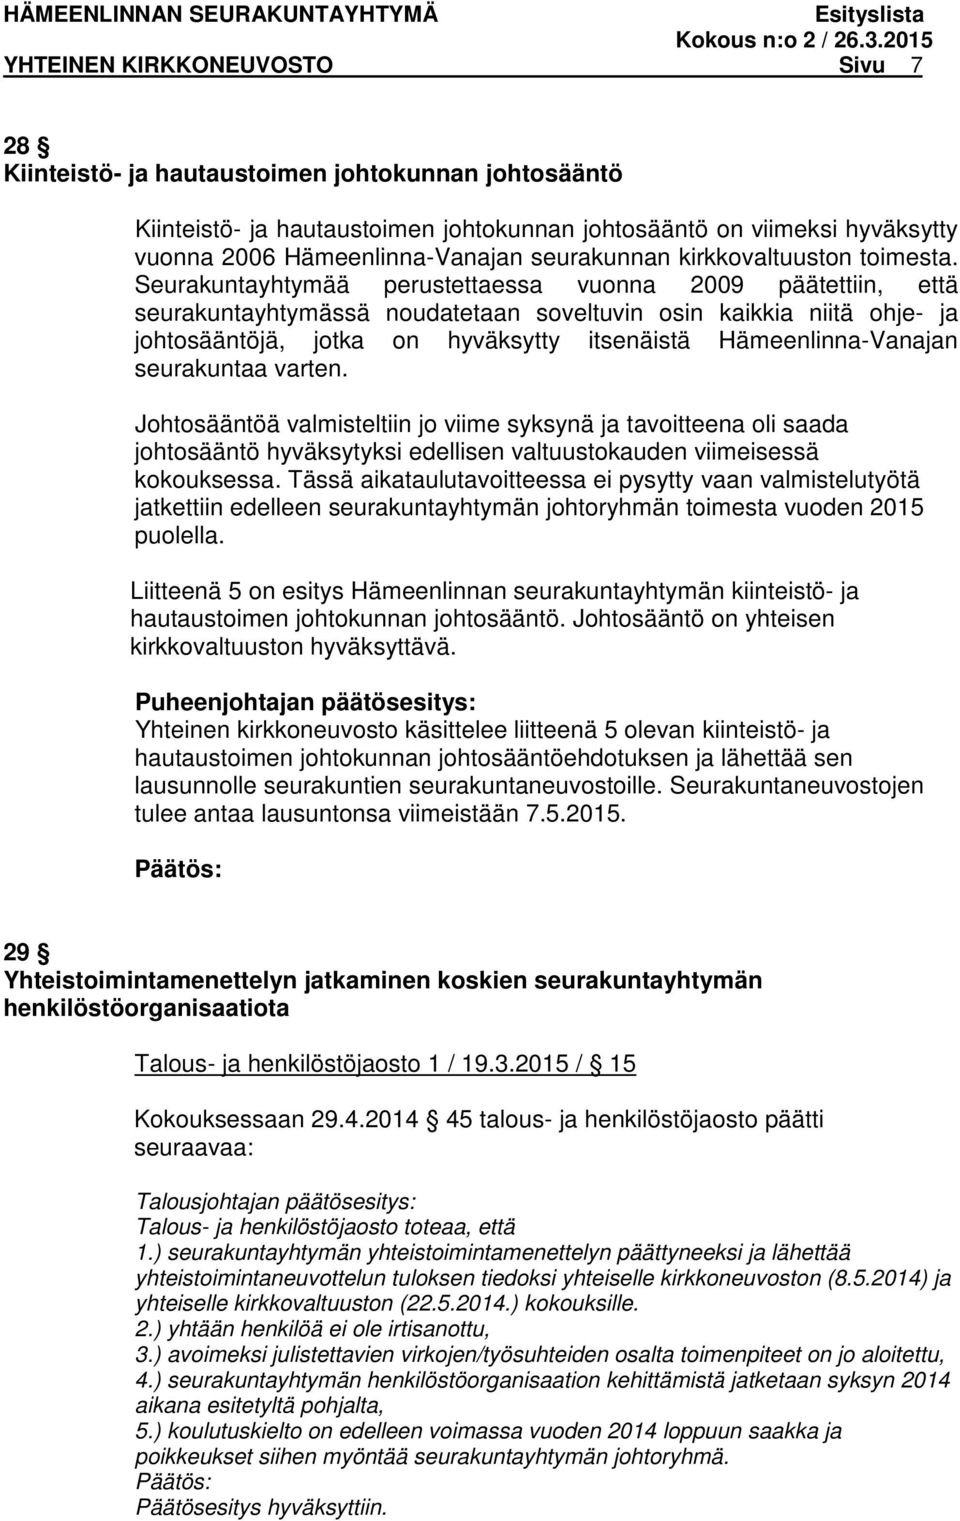 Seurakuntayhtymää perustettaessa vuonna 2009 päätettiin, että seurakuntayhtymässä noudatetaan soveltuvin osin kaikkia niitä ohje- ja johtosääntöjä, jotka on hyväksytty itsenäistä Hämeenlinna-Vanajan